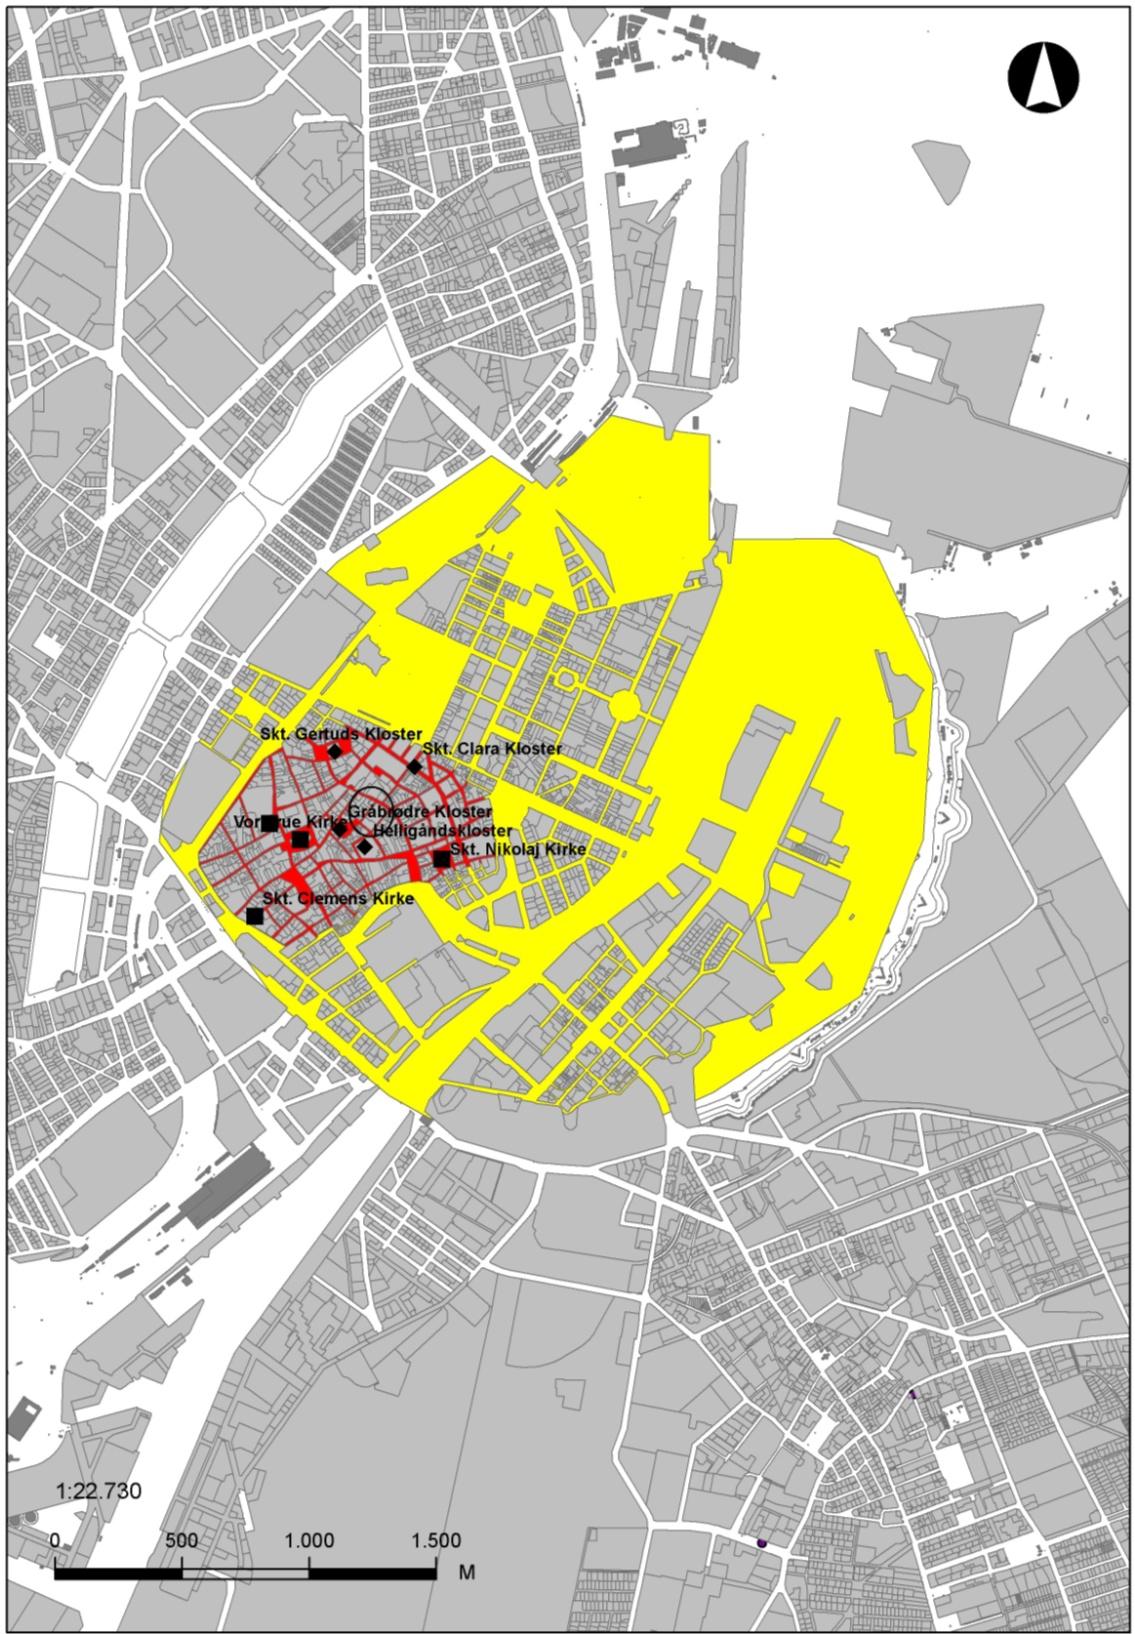 Figur 1 Oversigt over middelalderbyen (angivet med rødt) Renæssanceudvidelsen (gult) Udgravning er situeret i